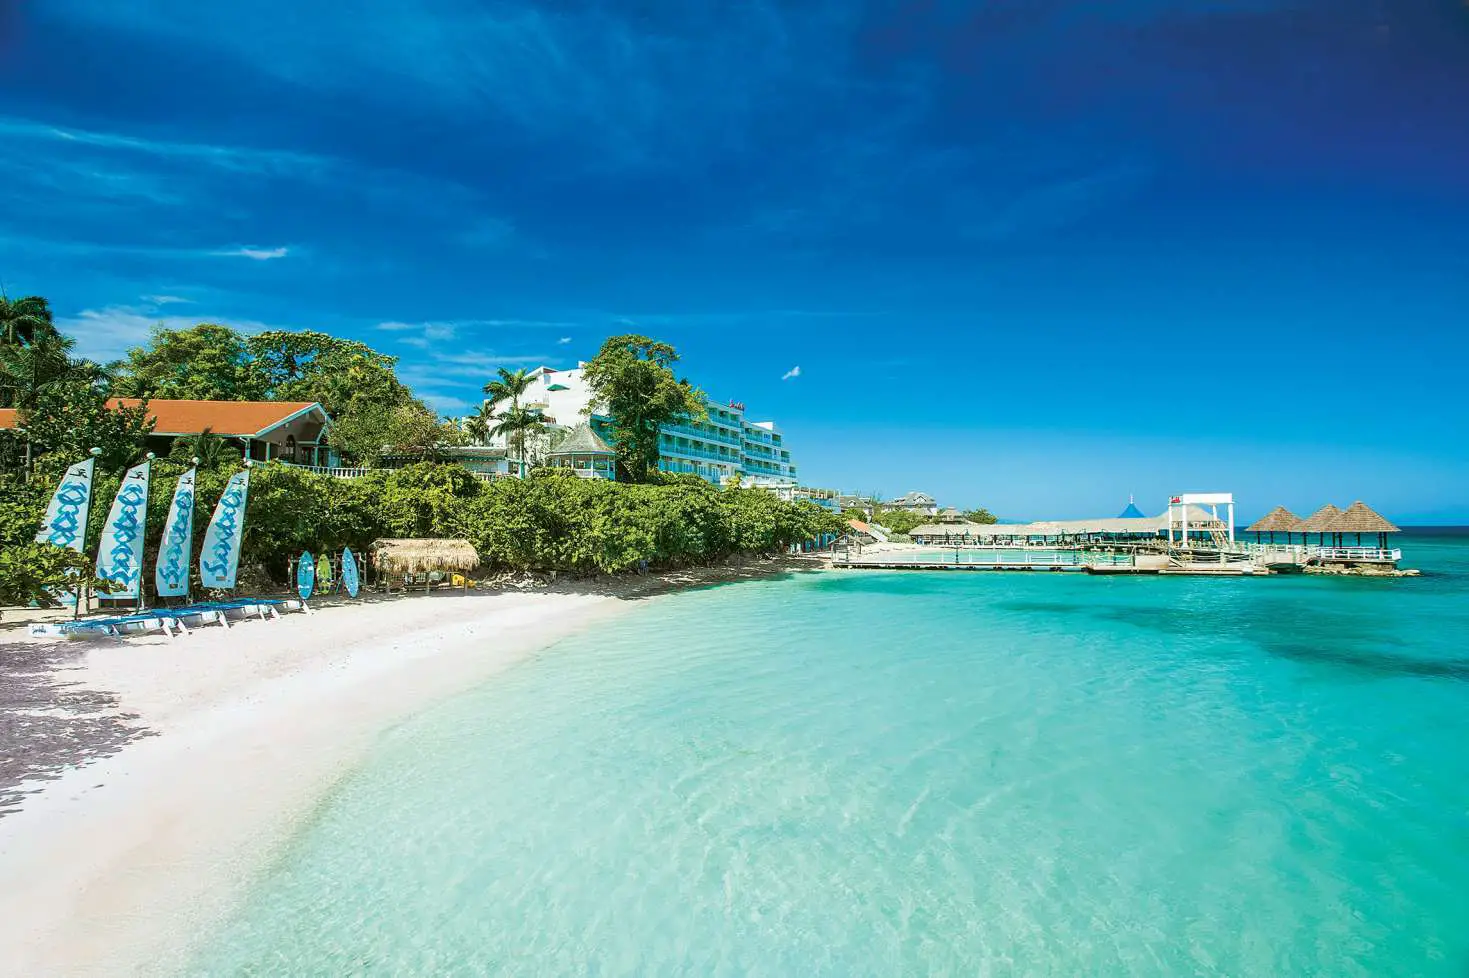 Sandals Ochi Beach Resort, Saint Ann, Jamaica